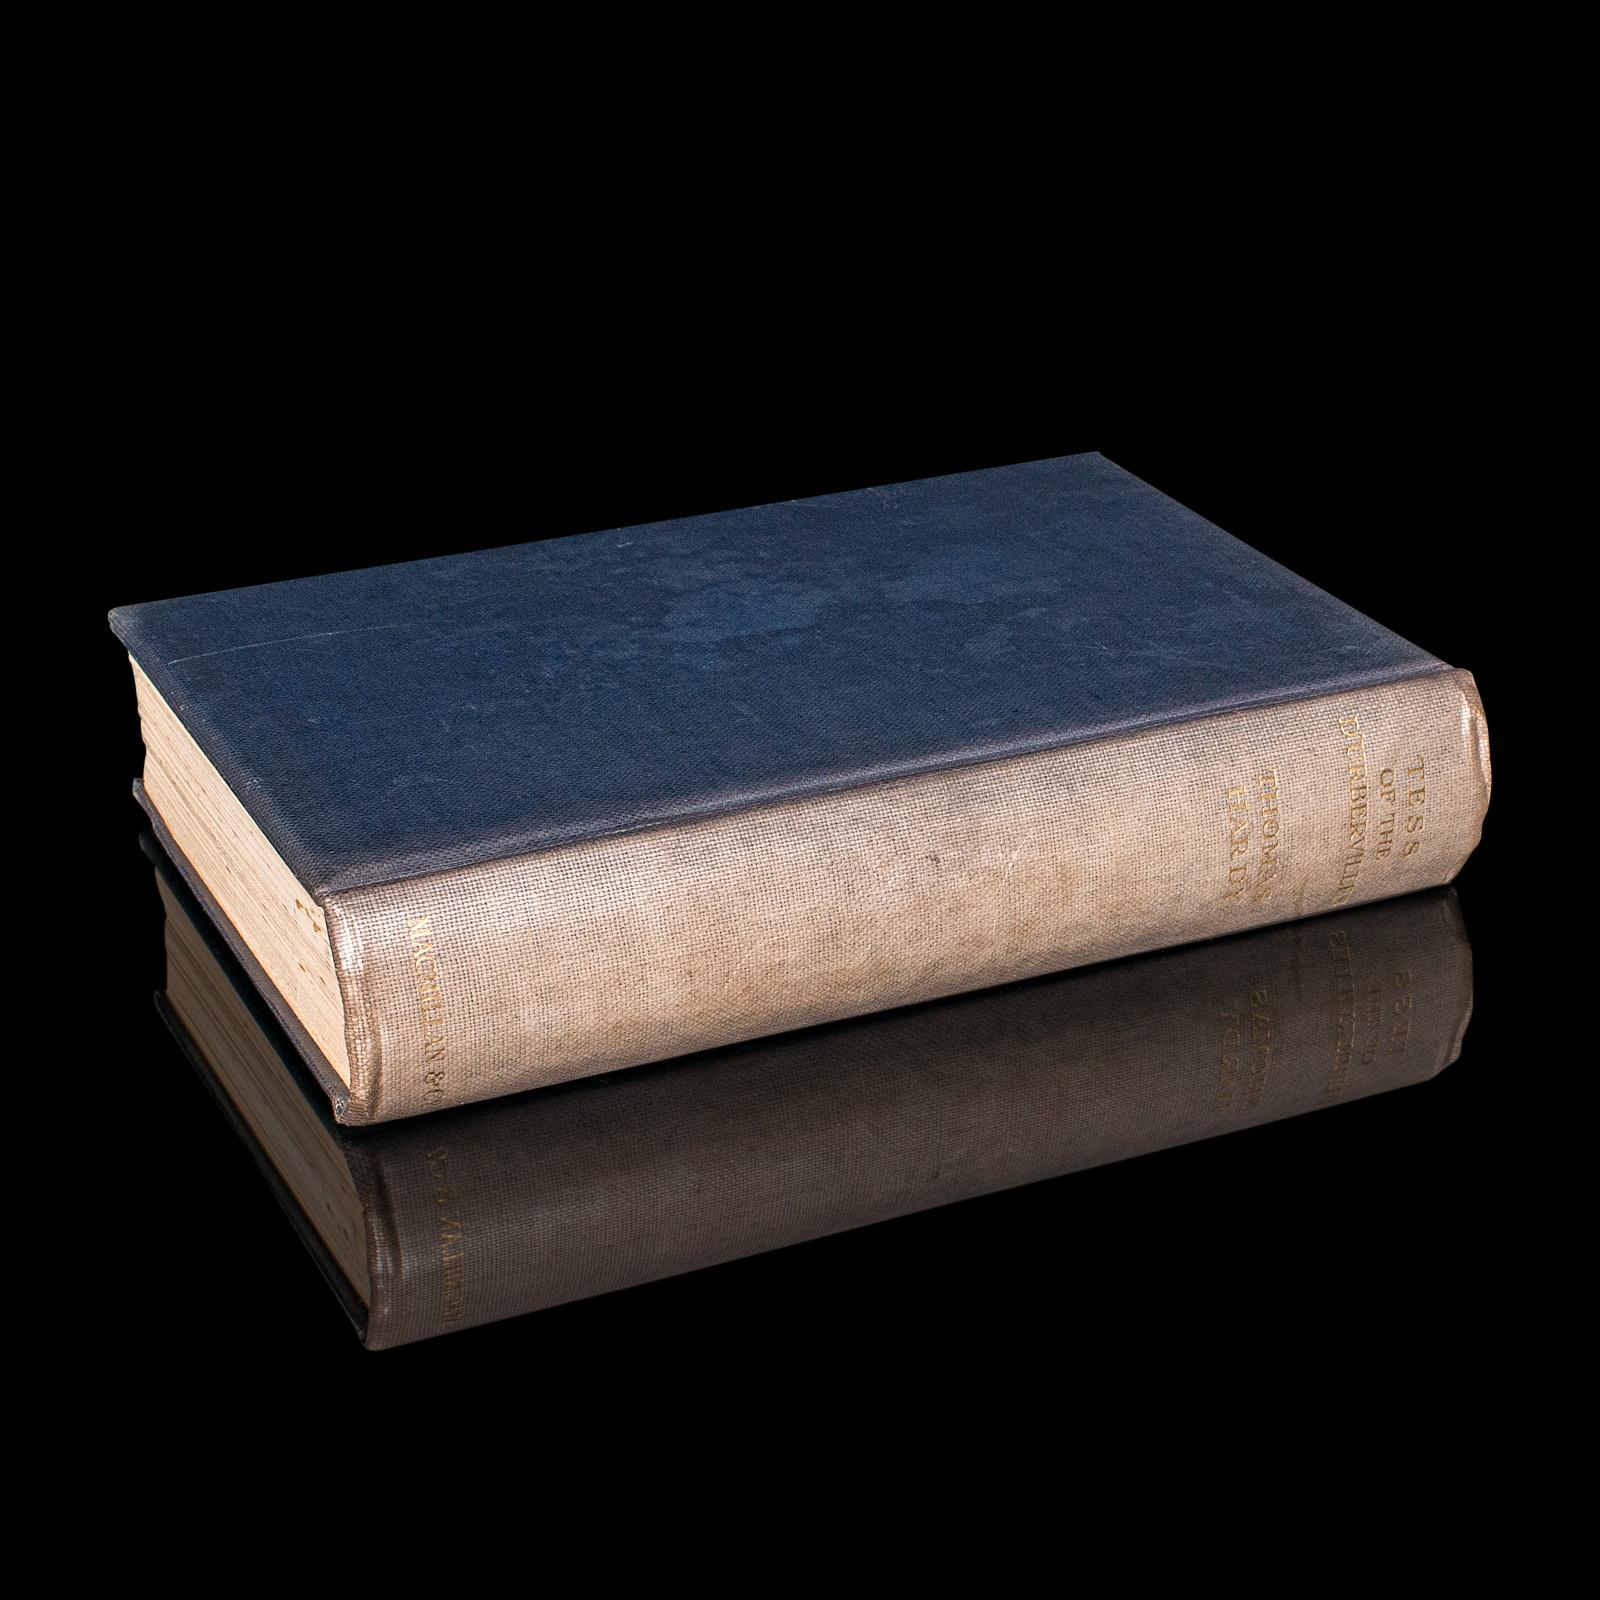 Il s'agit d'un exemplaire vintage de Tess of the D'Urbervilles par Thomas Hardy. Roman anglais en édition limitée, relié en toile, datant du début du 20e siècle, publié en 1926.

Thomas Hardy (1840 - 1928) est un romancier et poète dont l'action se